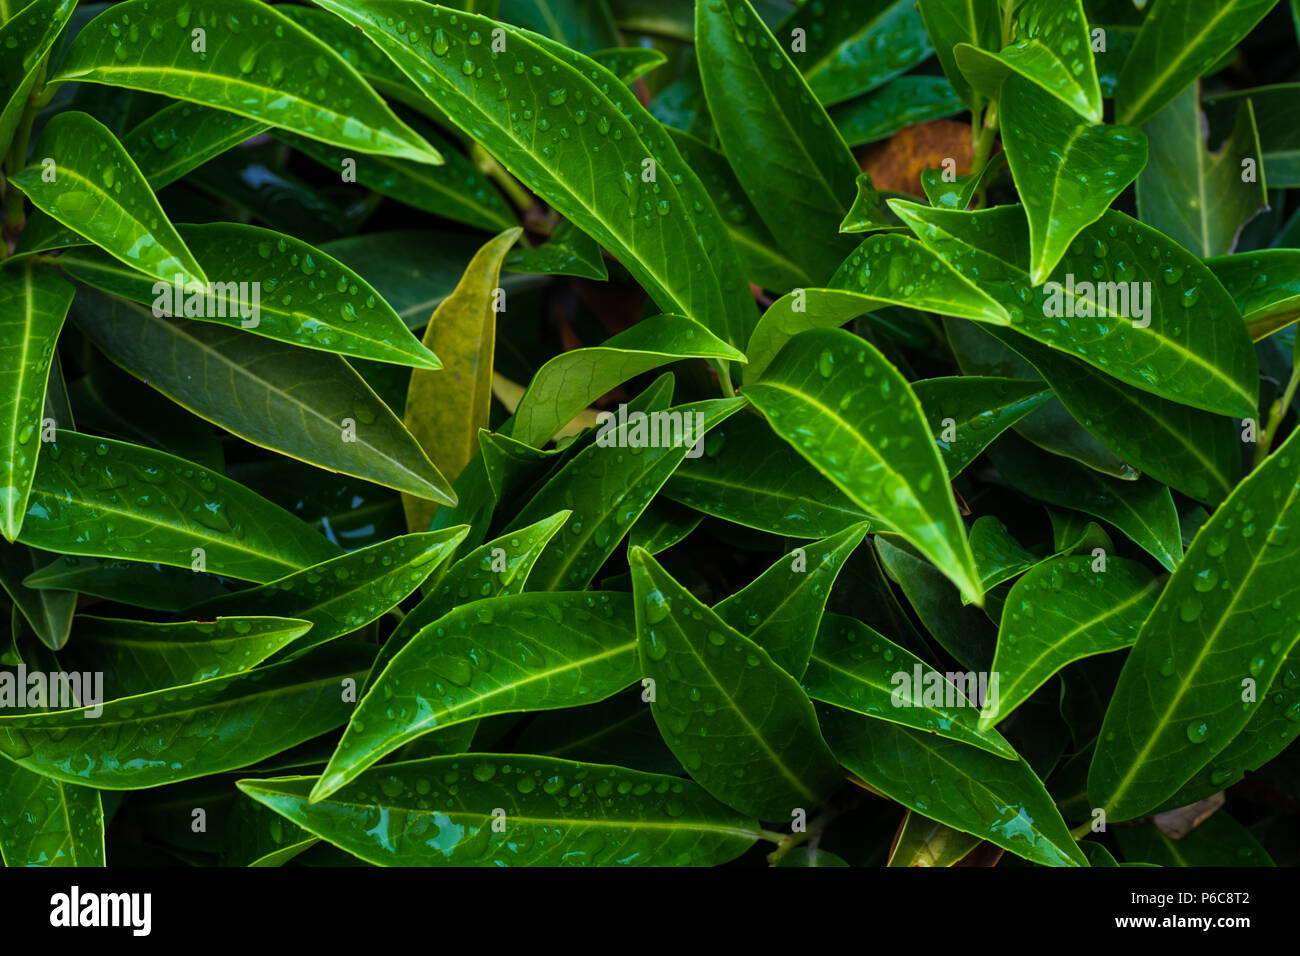 Evergreen cherry Laurel Pflanze als Antural backgrund mit closeup details Stockfoto